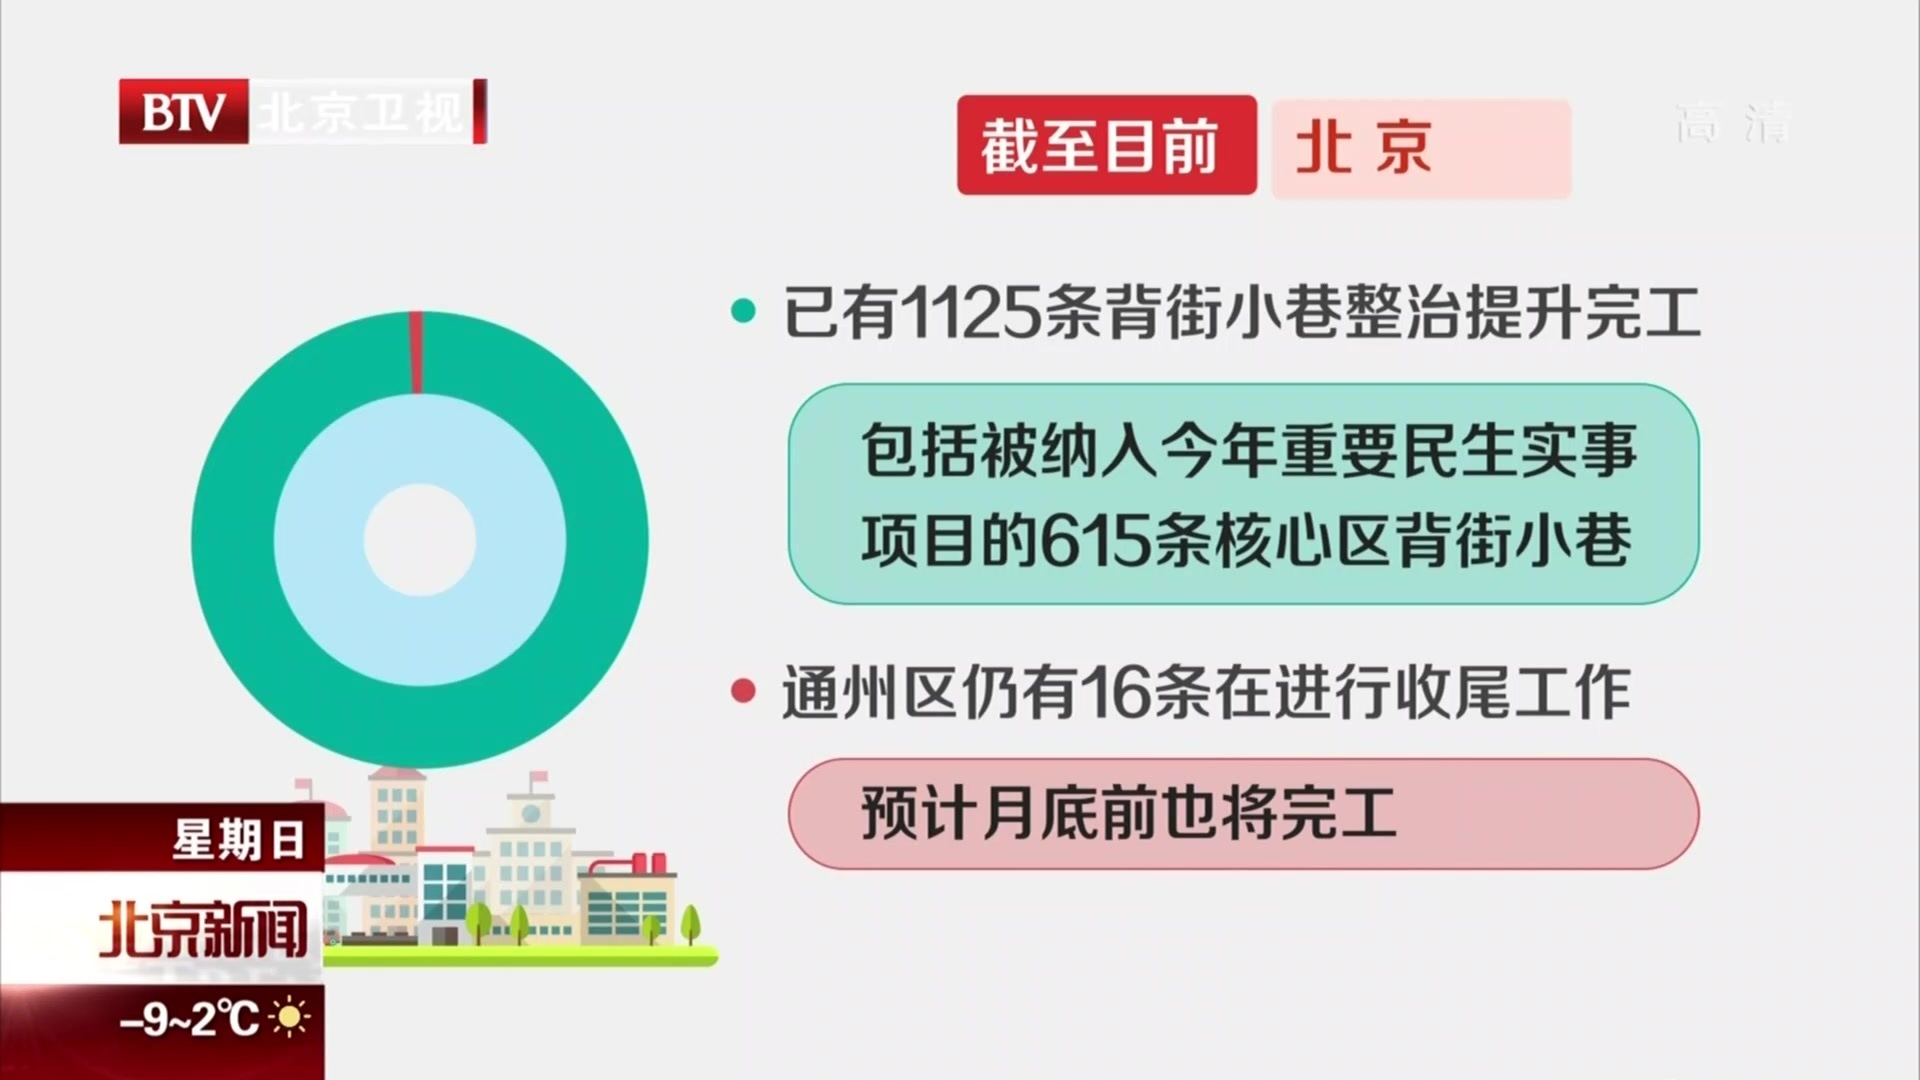 北京1141条背街小巷月底前完成年度整治目标